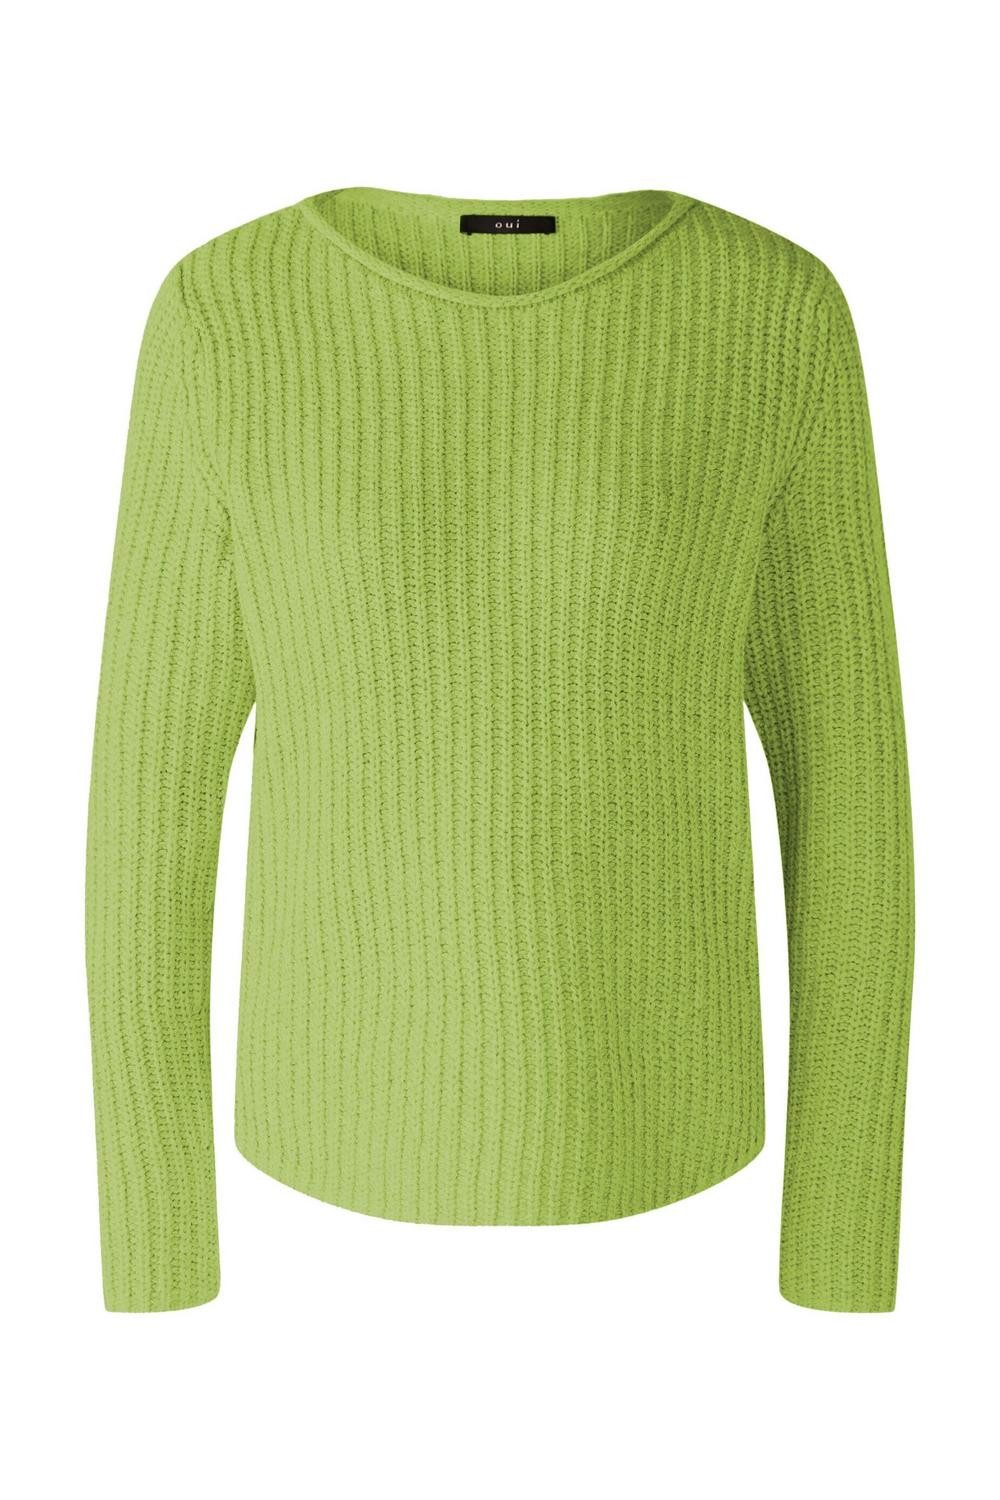 Oui Sweatshirt Pullover, lt green green